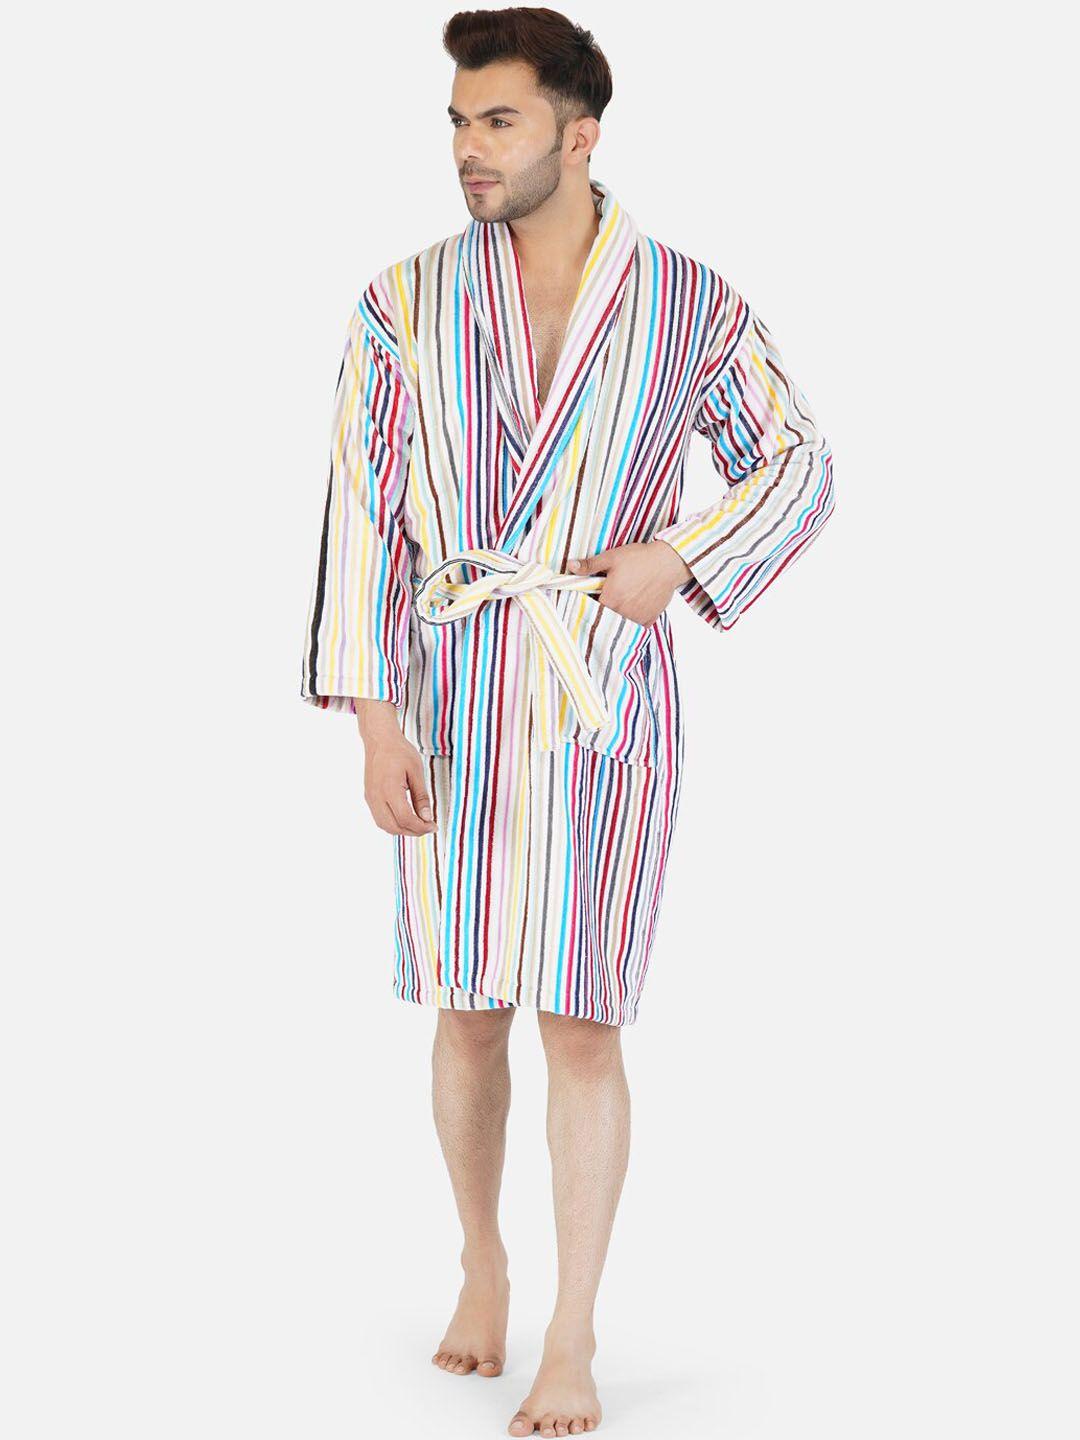 rangoli men multicoloured striped 400 gsm pure bath robe with slippers